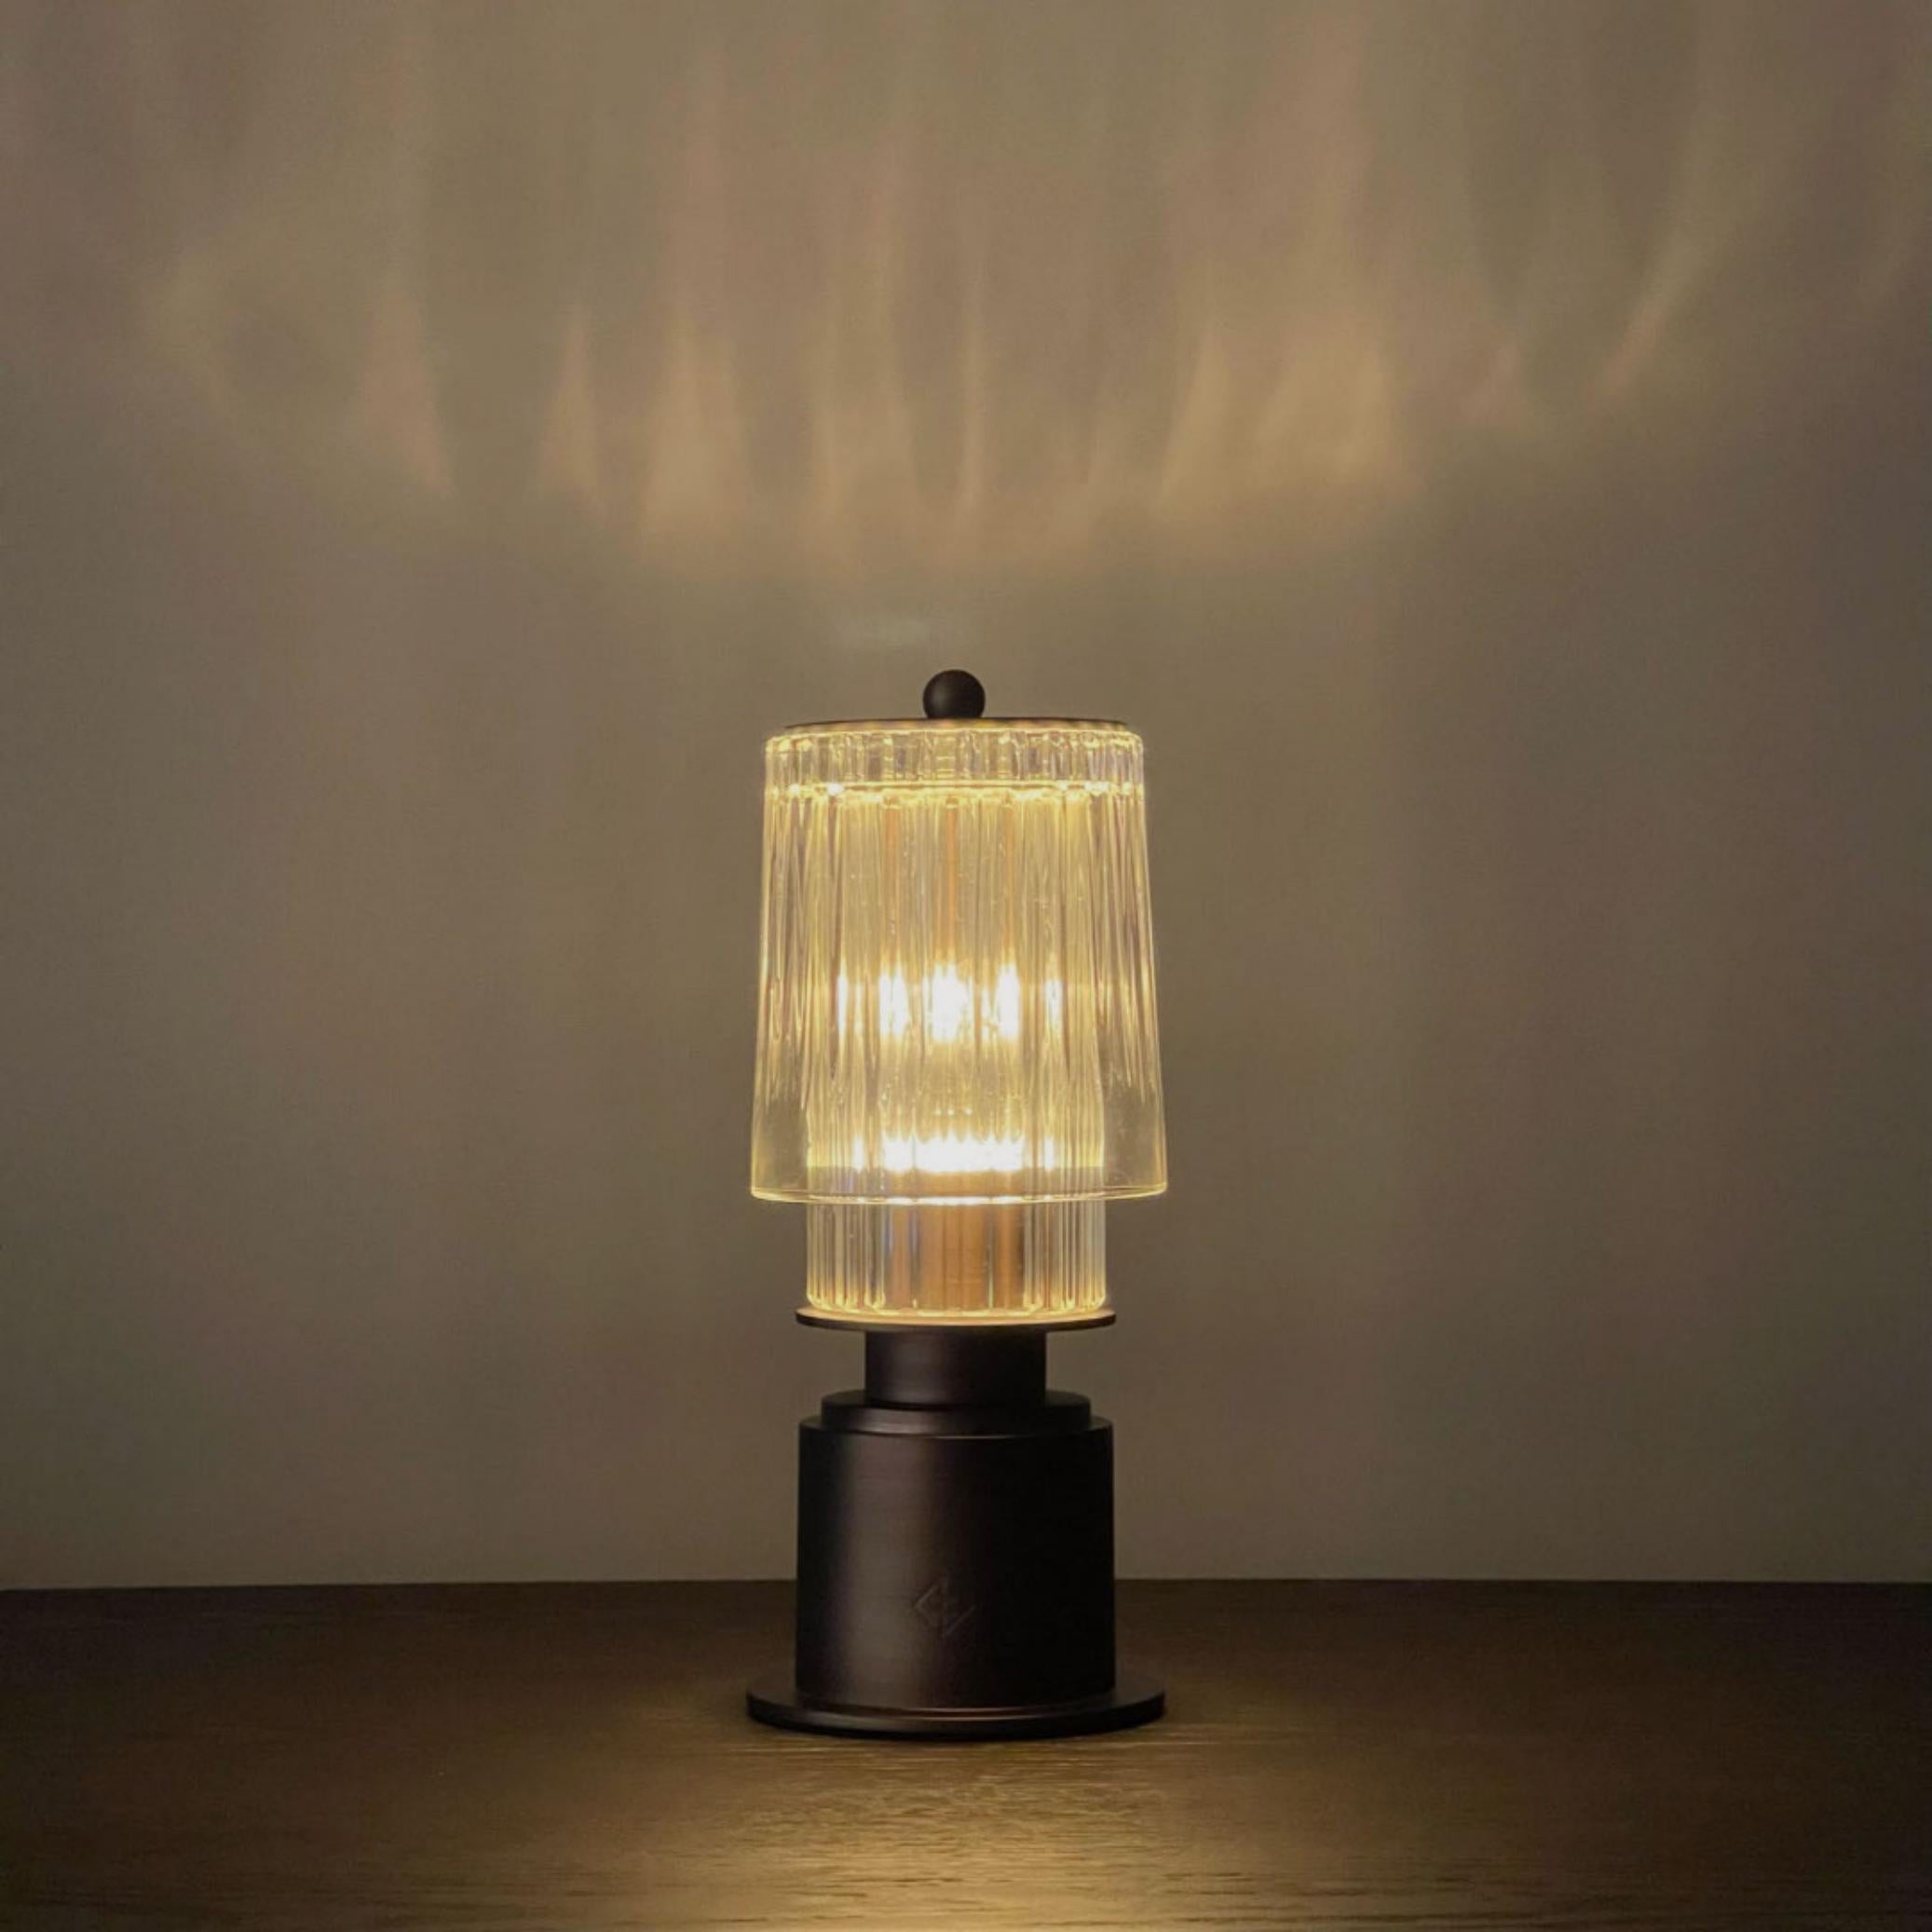 Diese handwerklich gefertigte, tragbare Lampe ist eine Neuinterpretation der klassischen Gaslaterne. Mit einer Palette aus geschliffenem Glas und eloxierter Bronze eignet sich die Lampe als Highlight für jedes Esszimmer oder als Lichtakzent in jeder